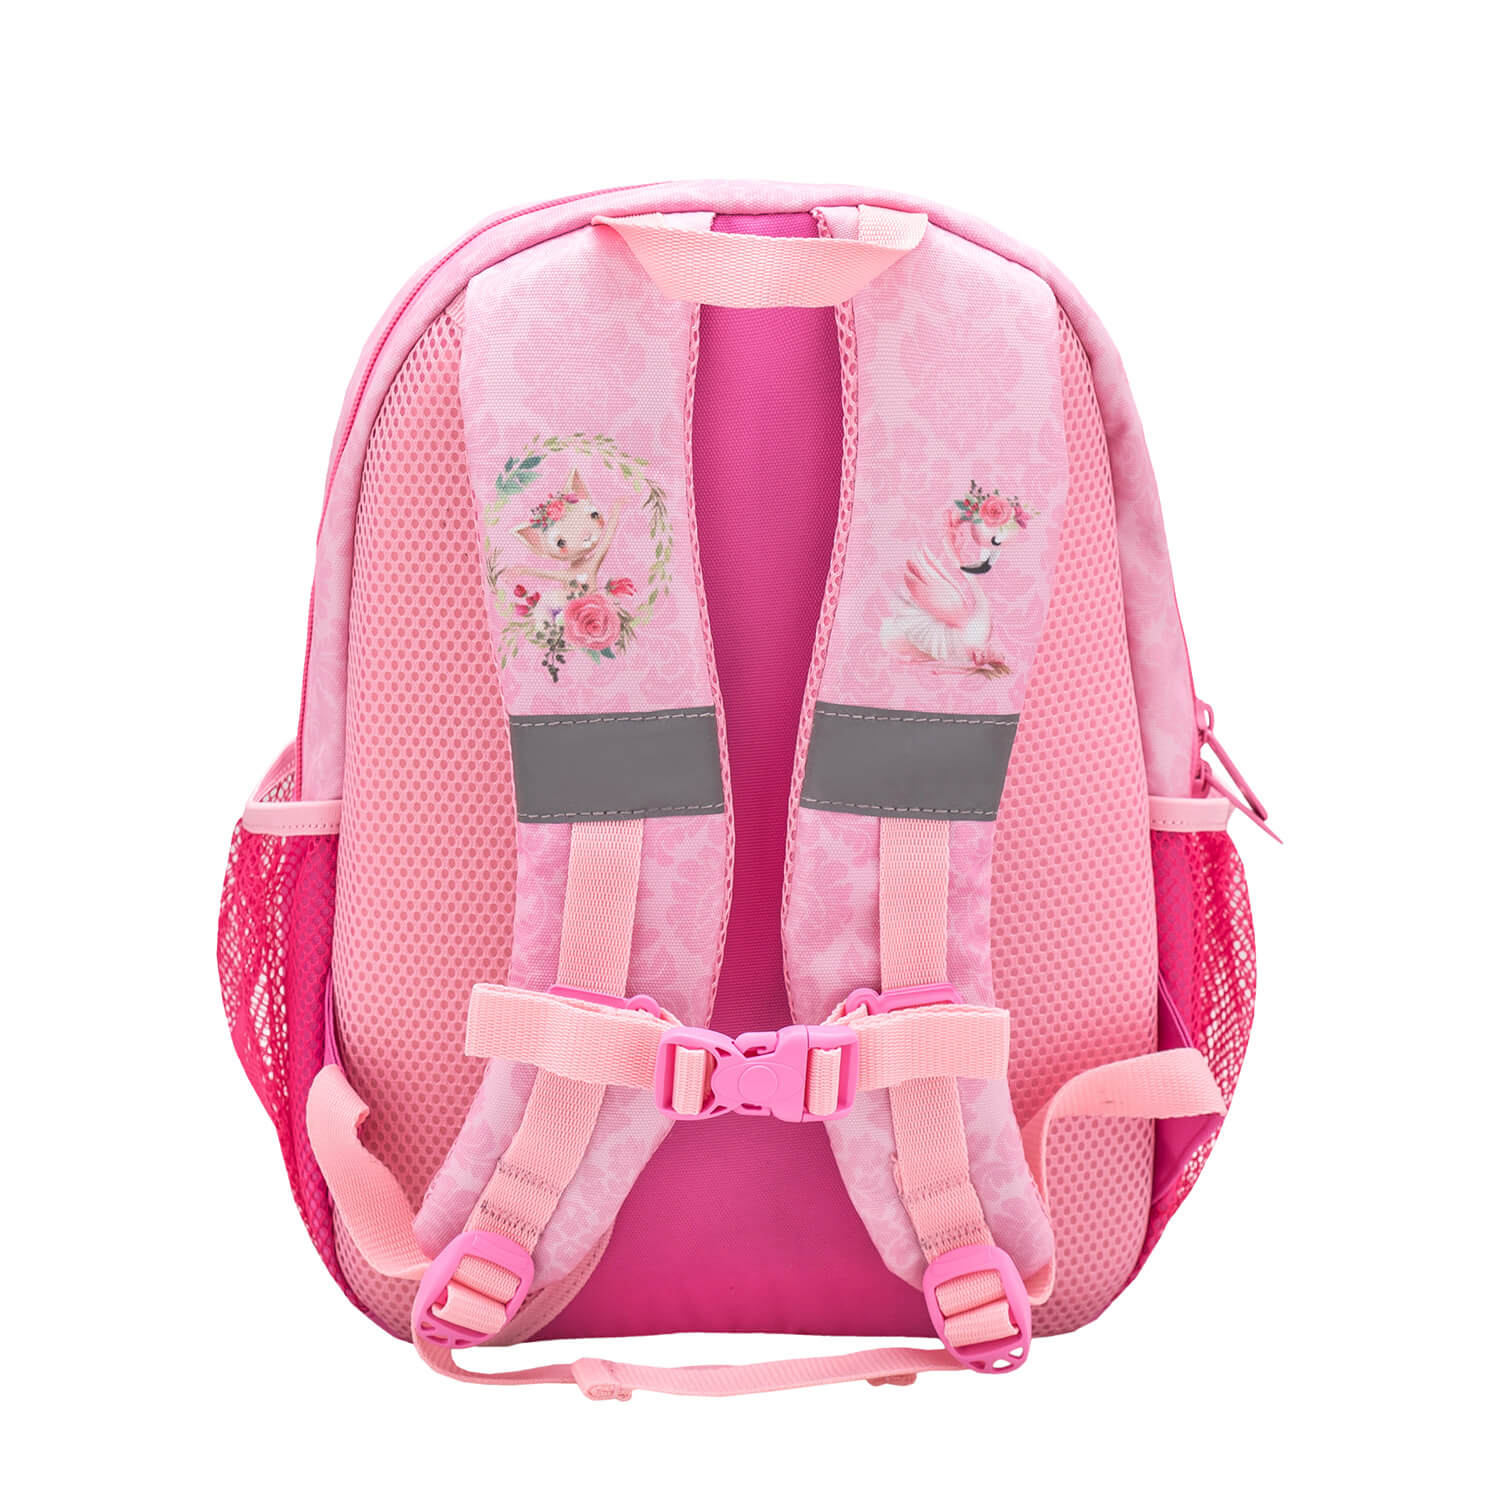 Kiddy Plus Ballerina Kindergarten Bag mit GRATIS Storage box